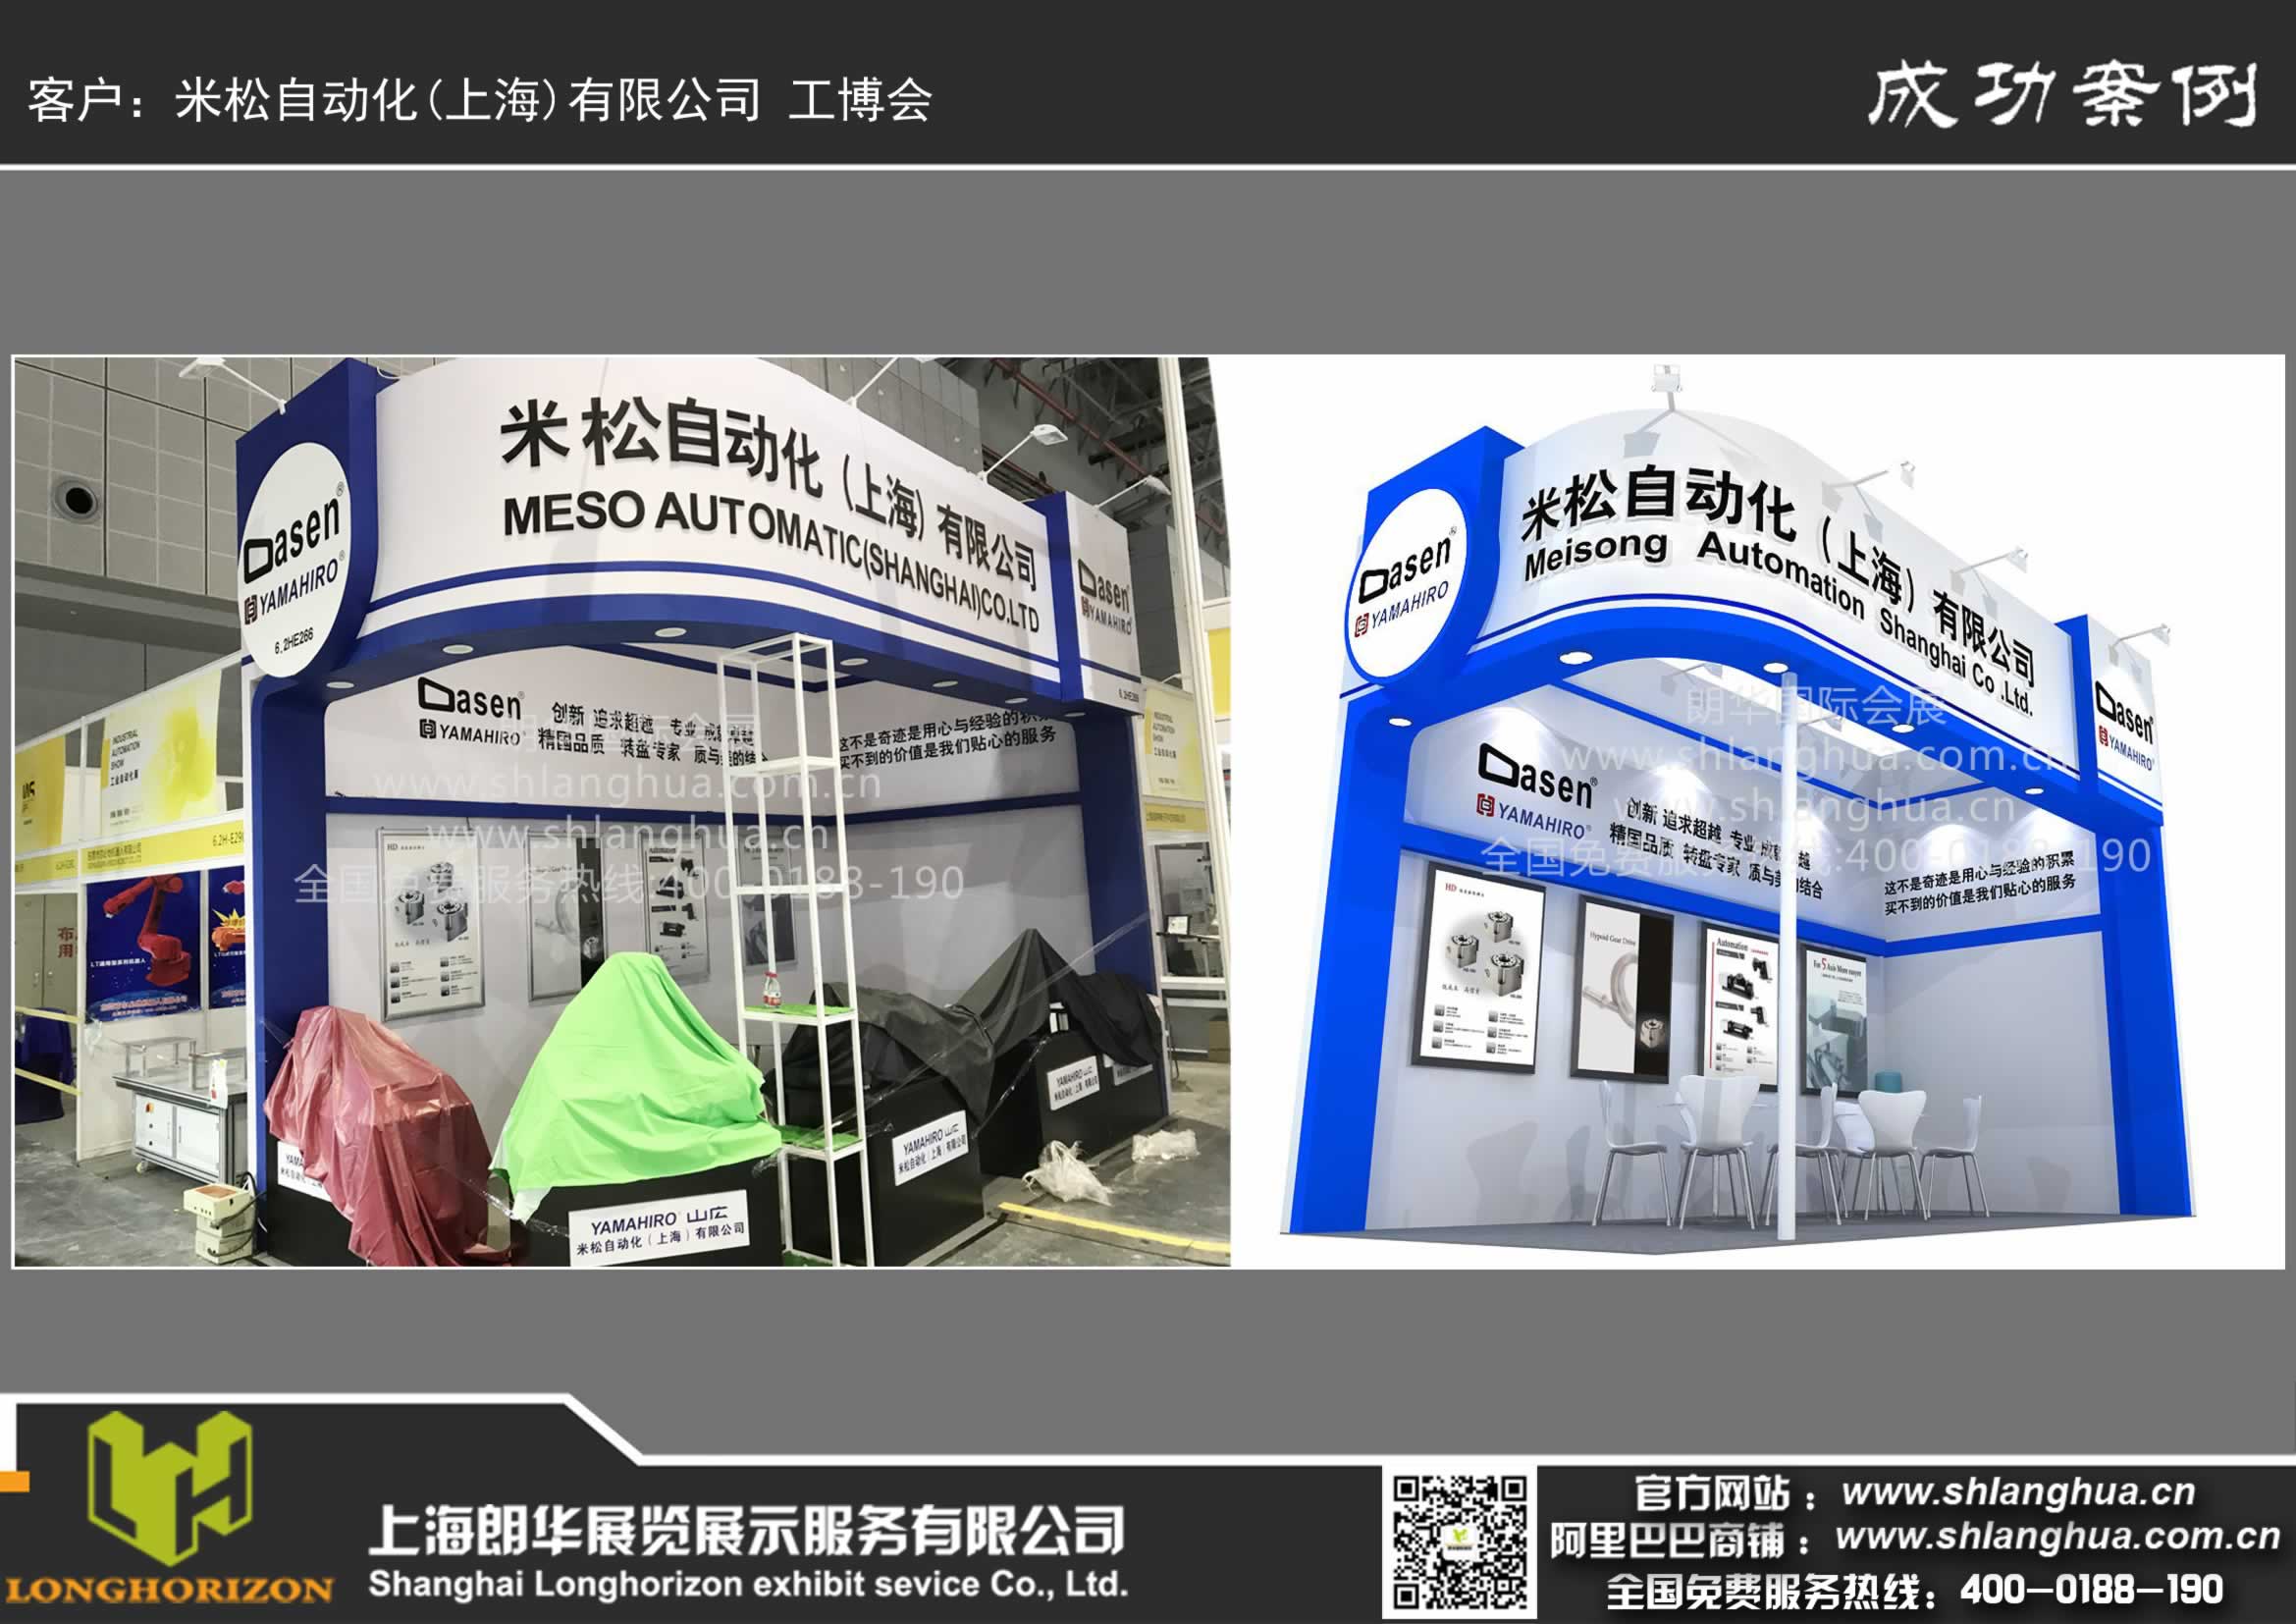 米松自动化(上海)有限公司 工博会